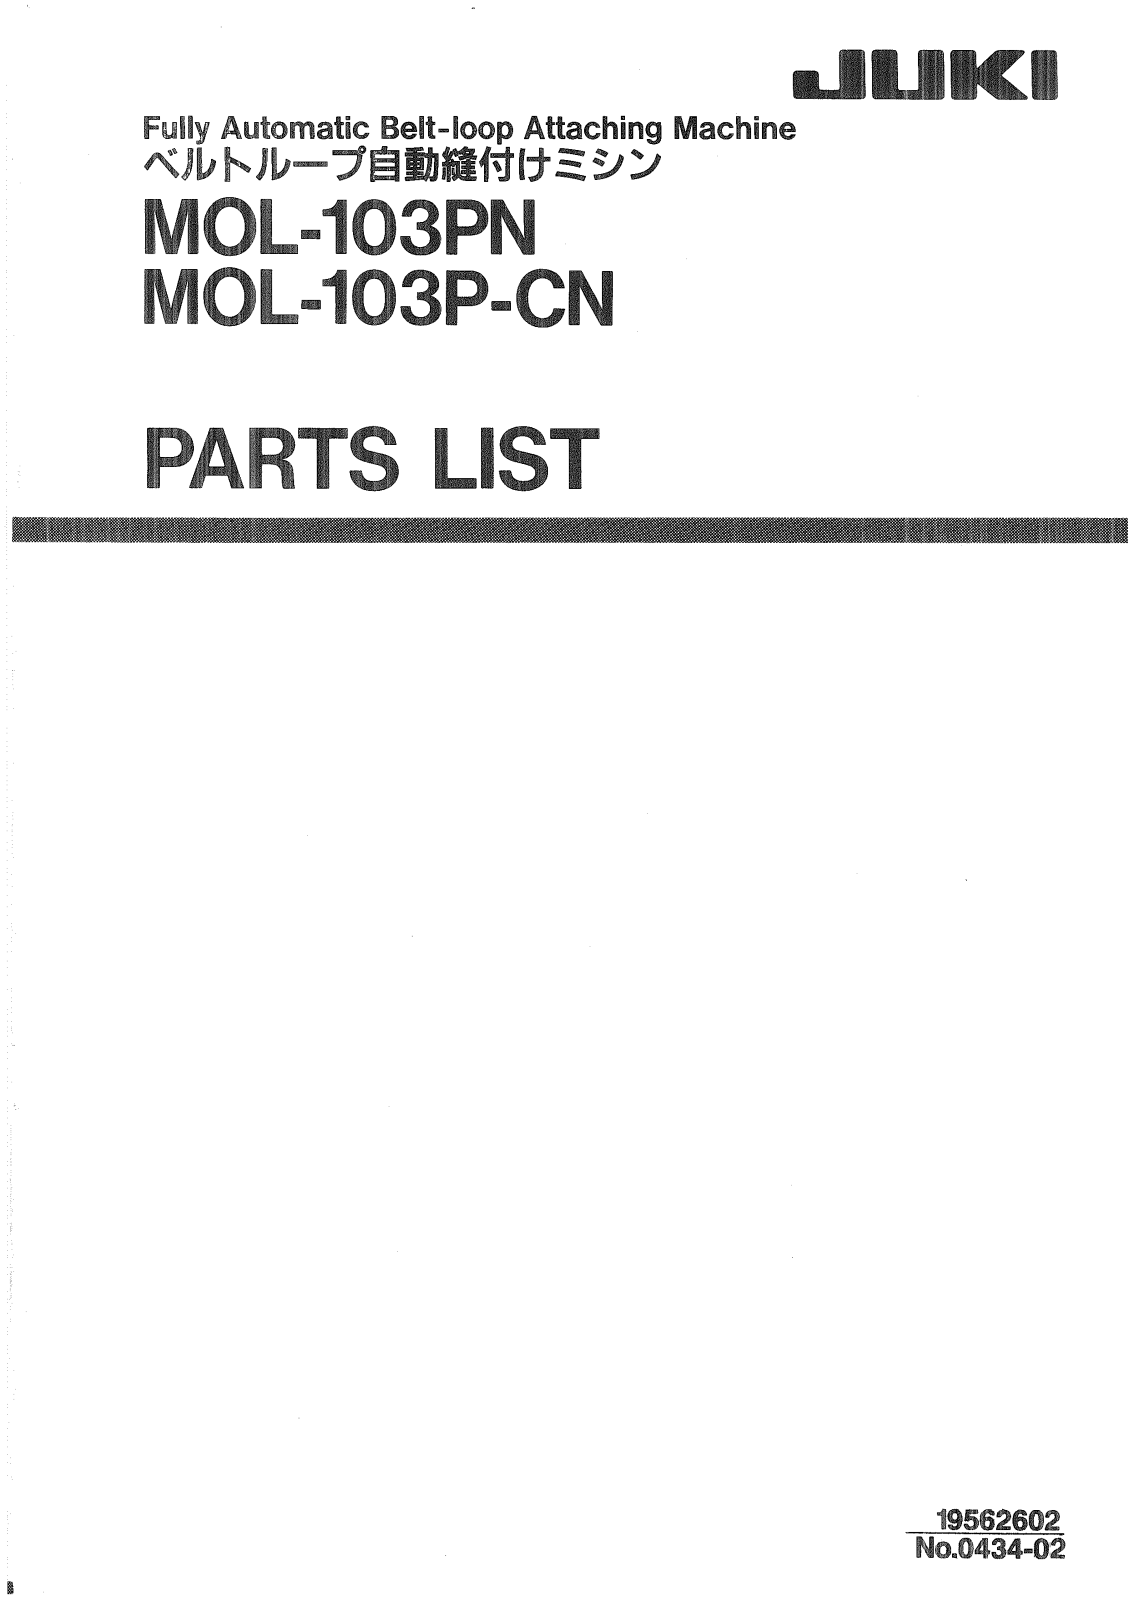 Juki MOL-103PN, MOL-103P-CN Parts List